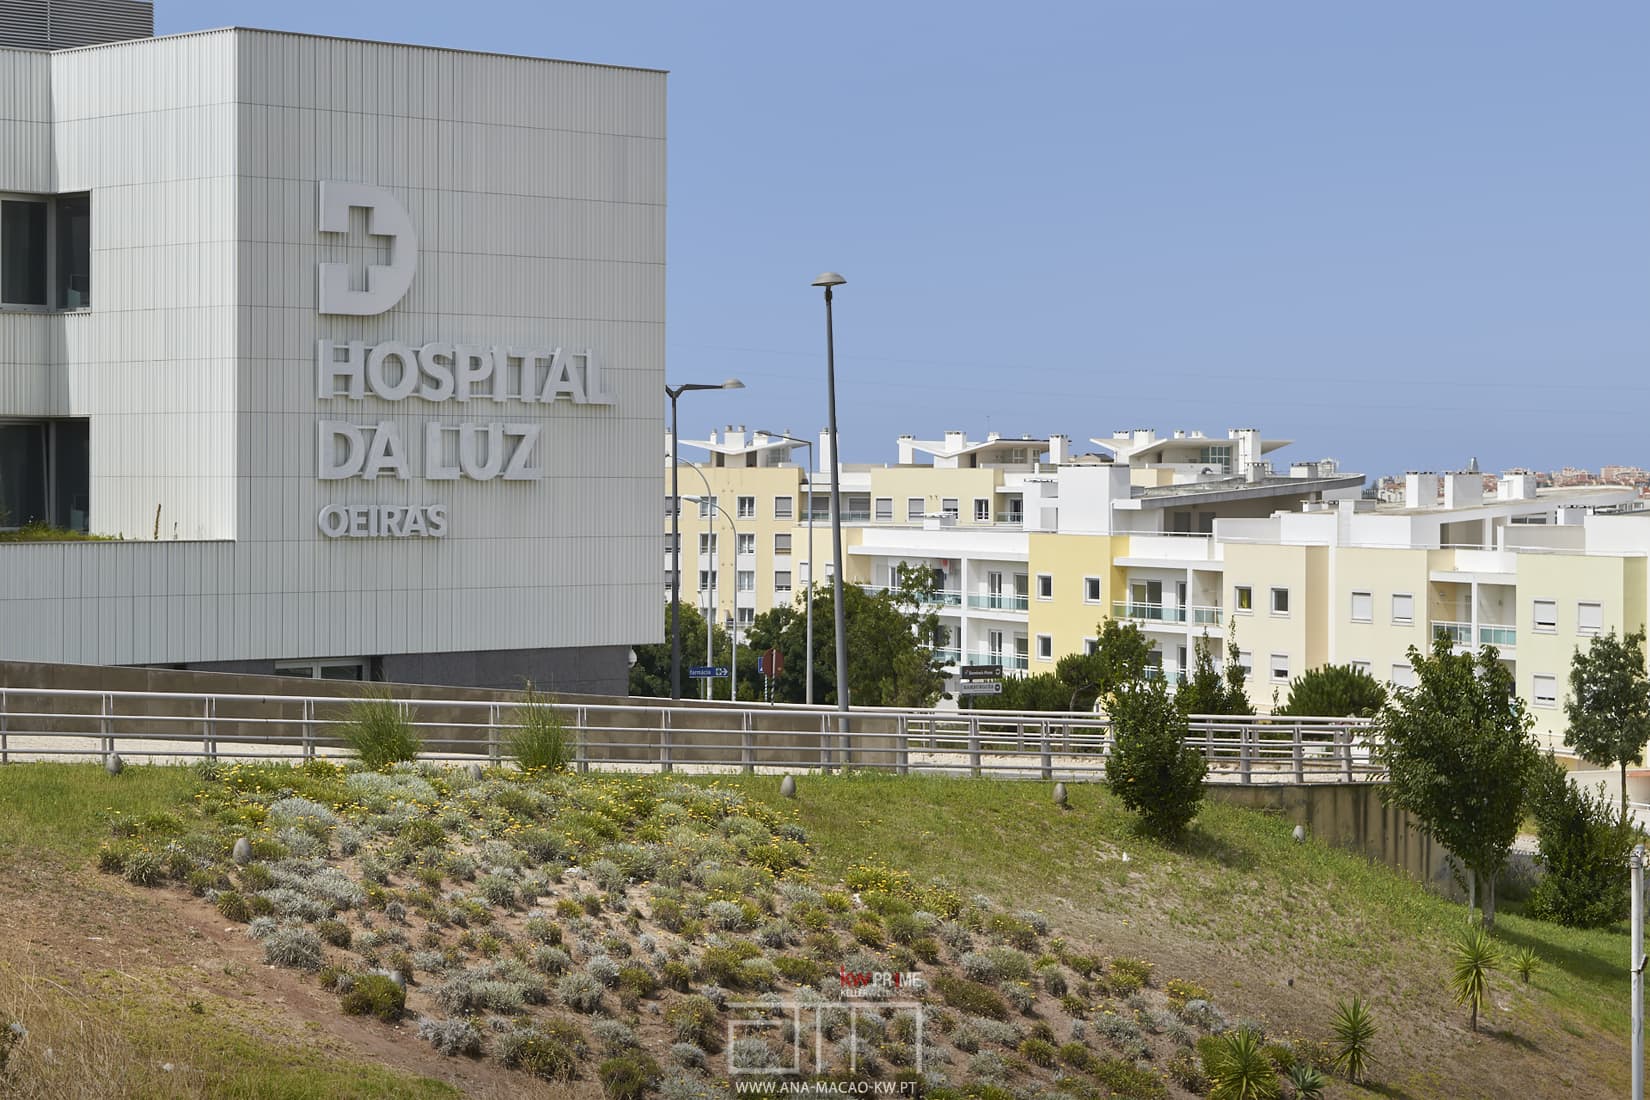 Hospital da Luz next to Fórum Oeiras